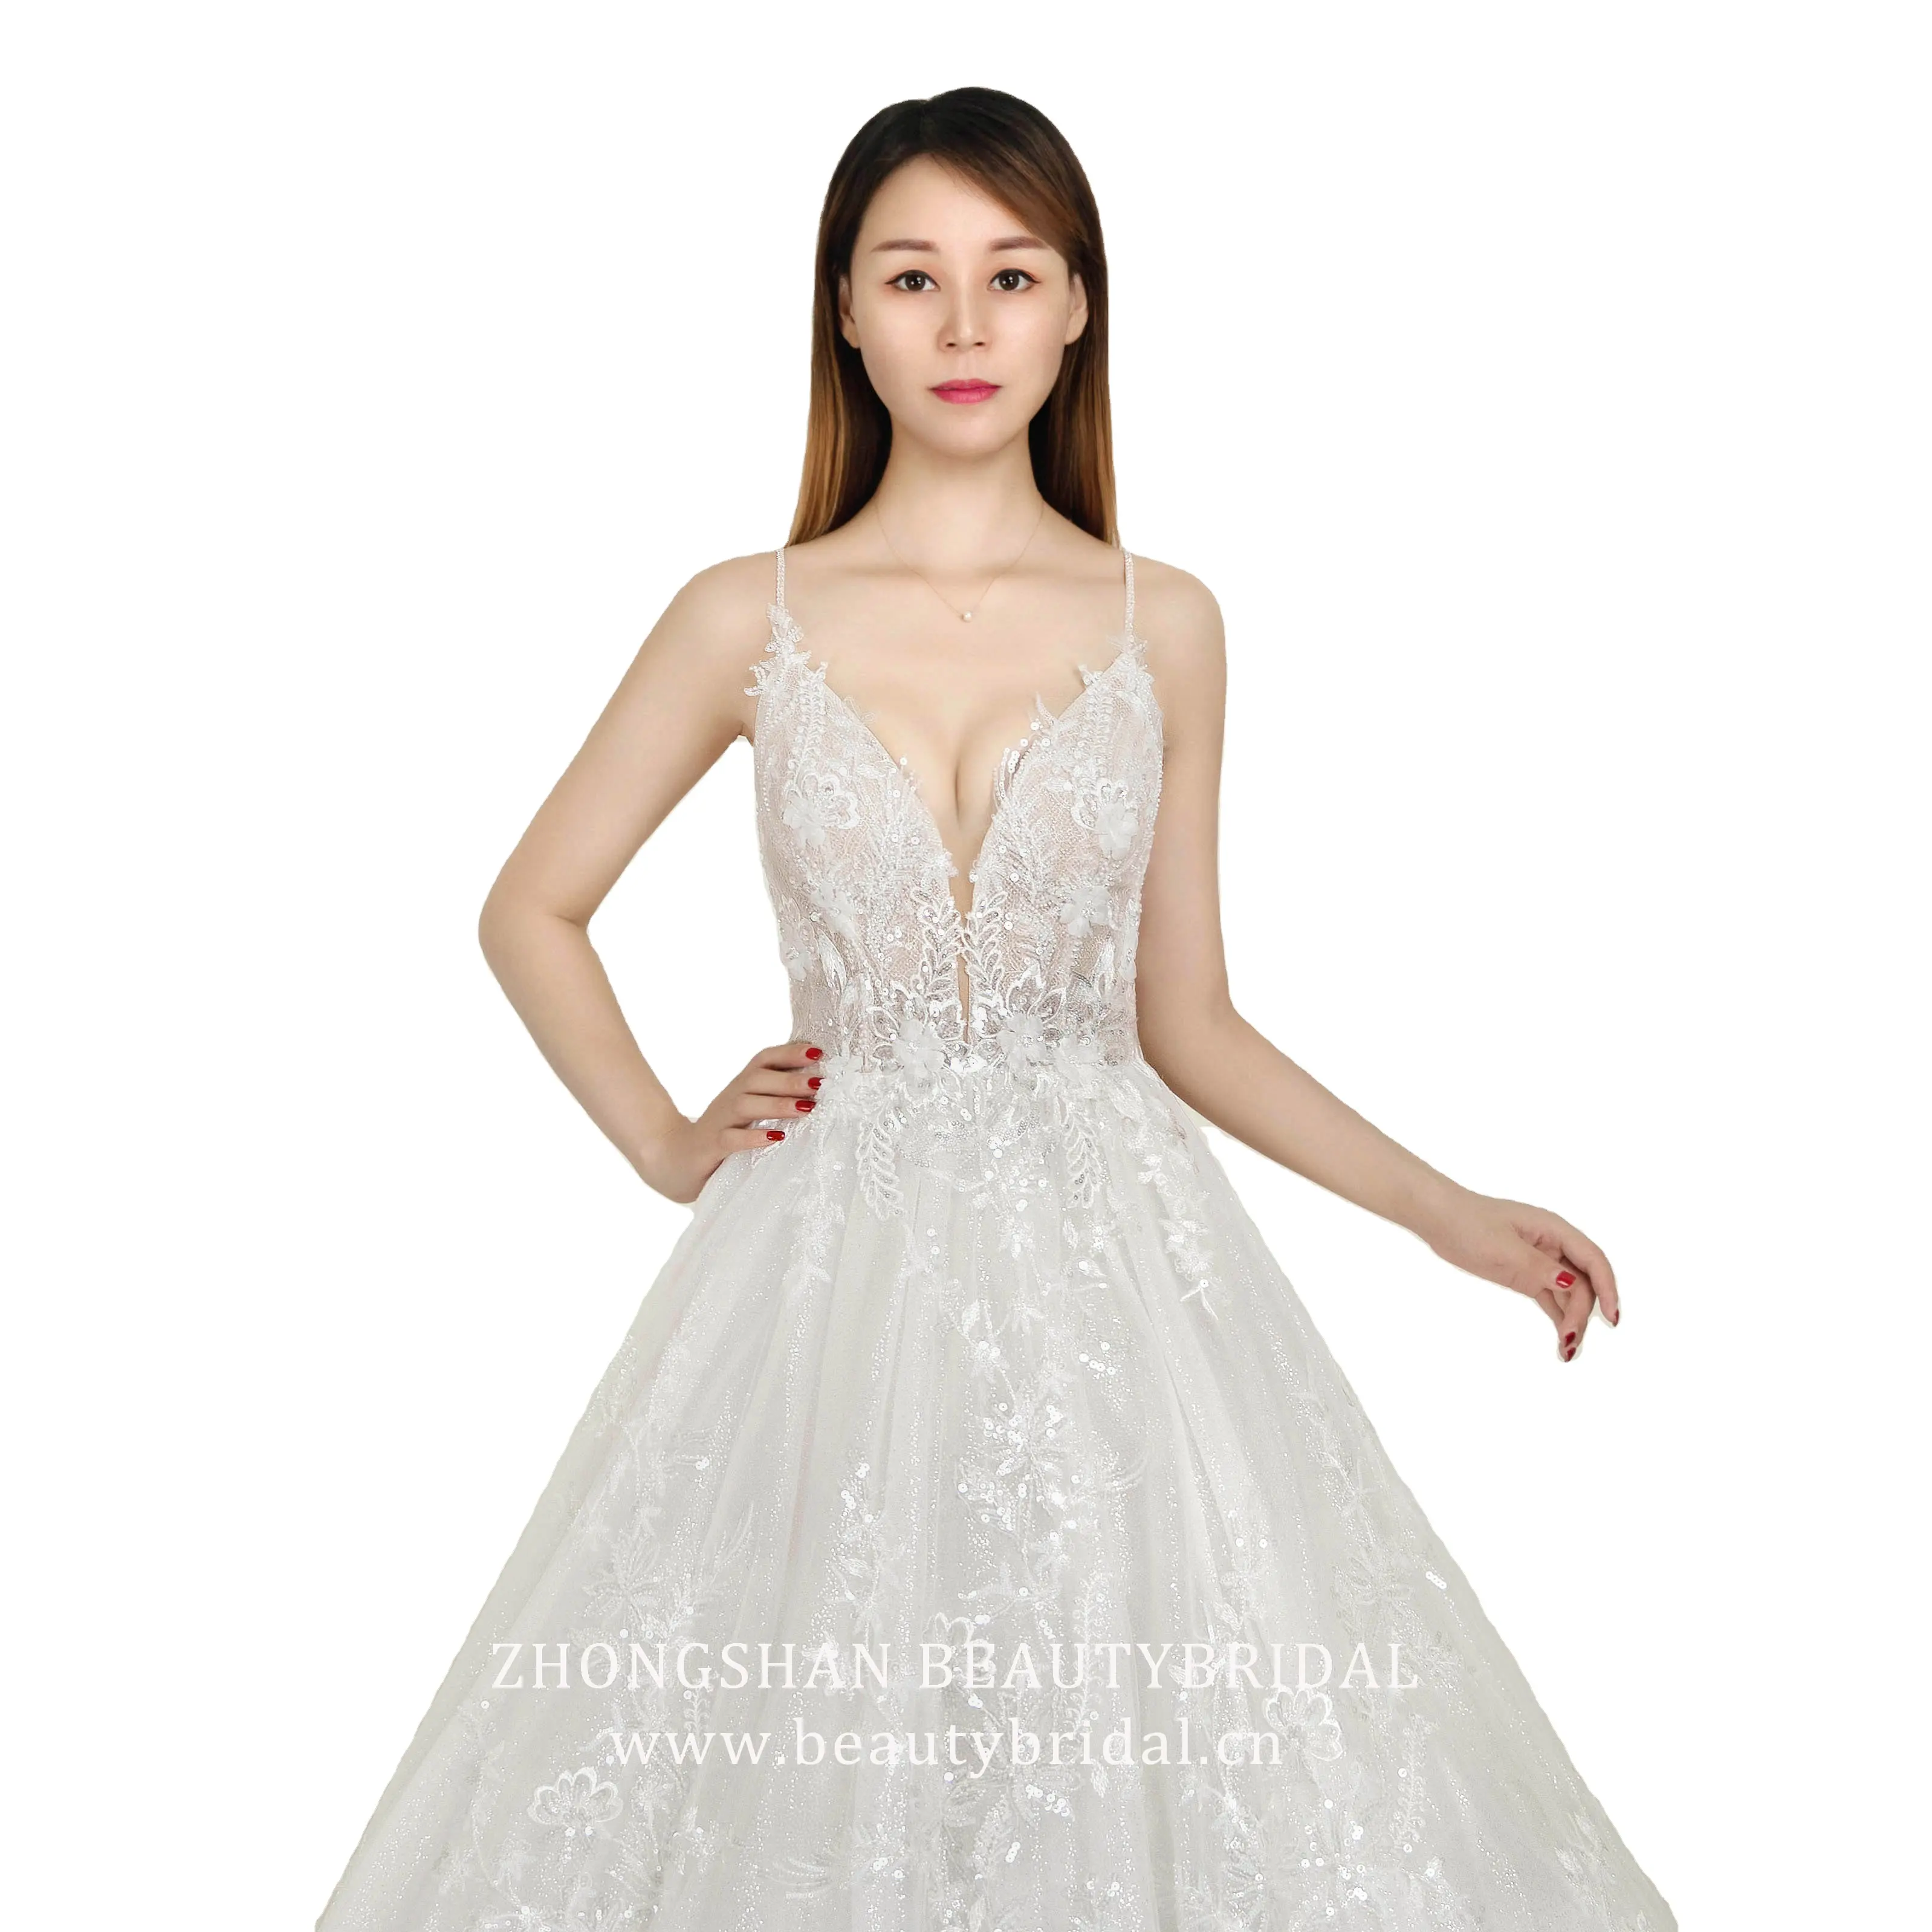 جودة عالية الساخن بيع مخصص أحدث تصميم الزفاف فستان زفاف مع الفاخرة الديكور وخط العنق الخامس الشكل